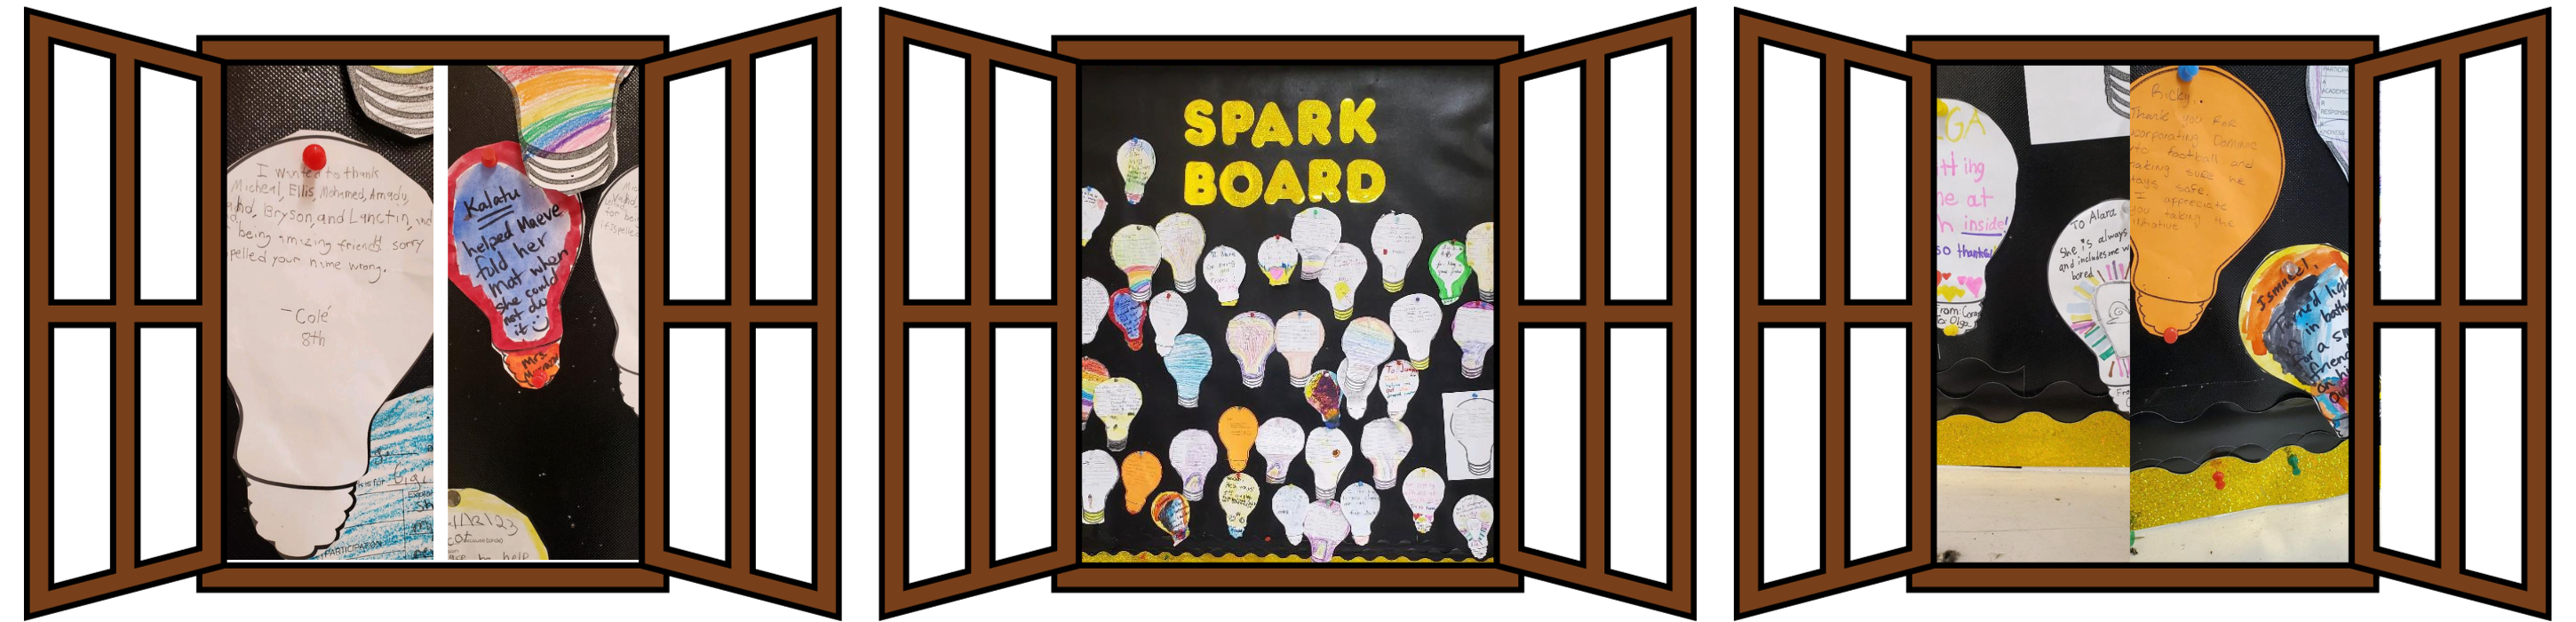 spark board